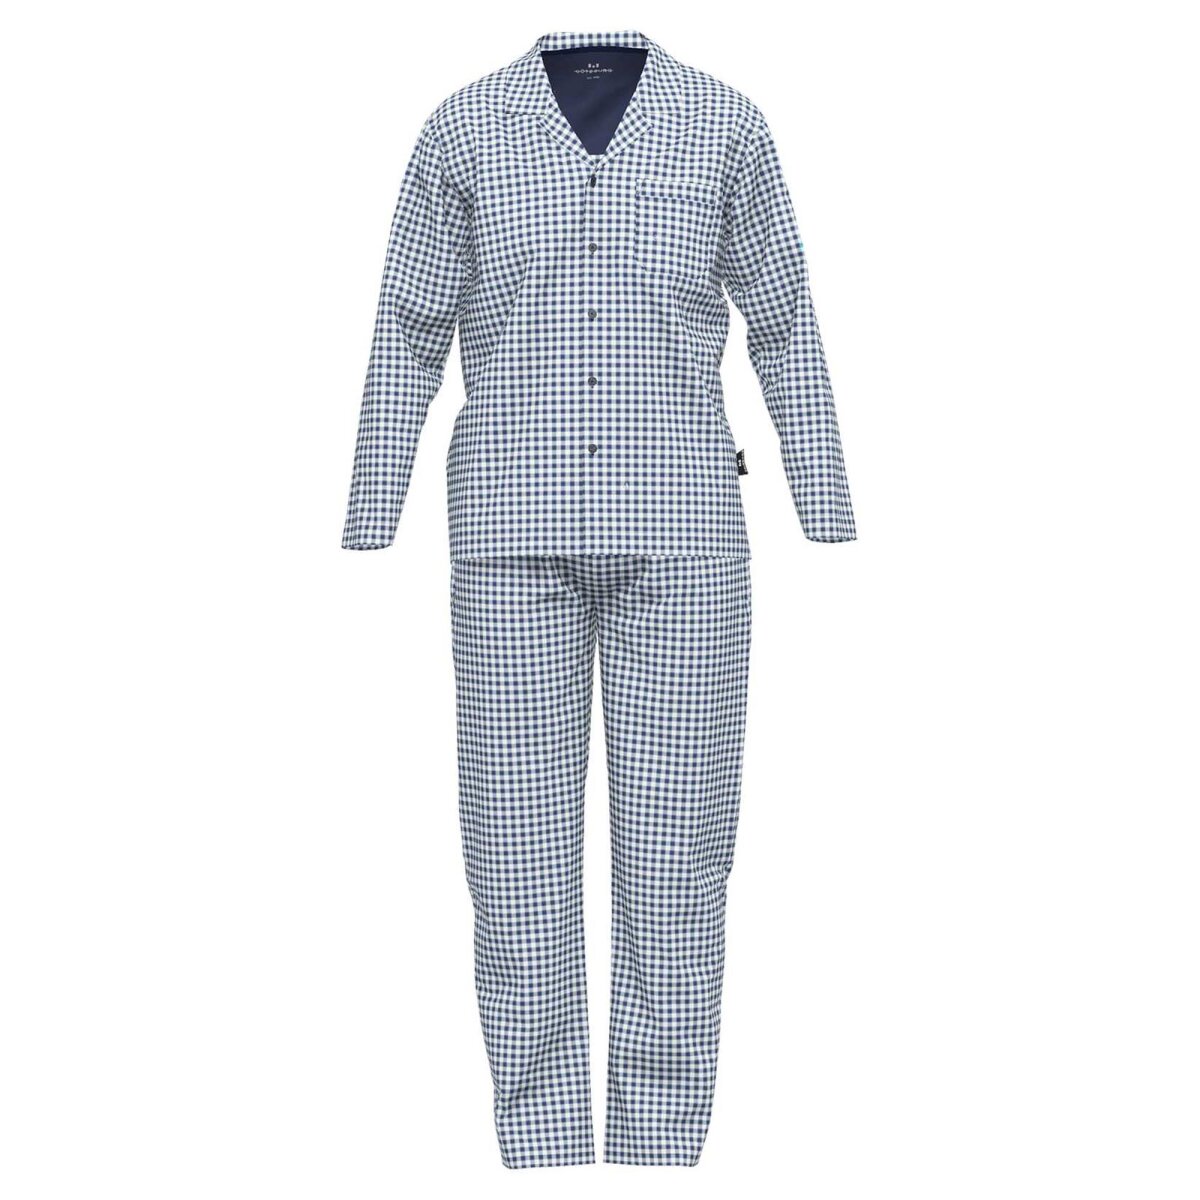 GÖTZBURG Herren Schlafanzug - Nachtwäsche, Pyjama, Baumwolle, Knopfle